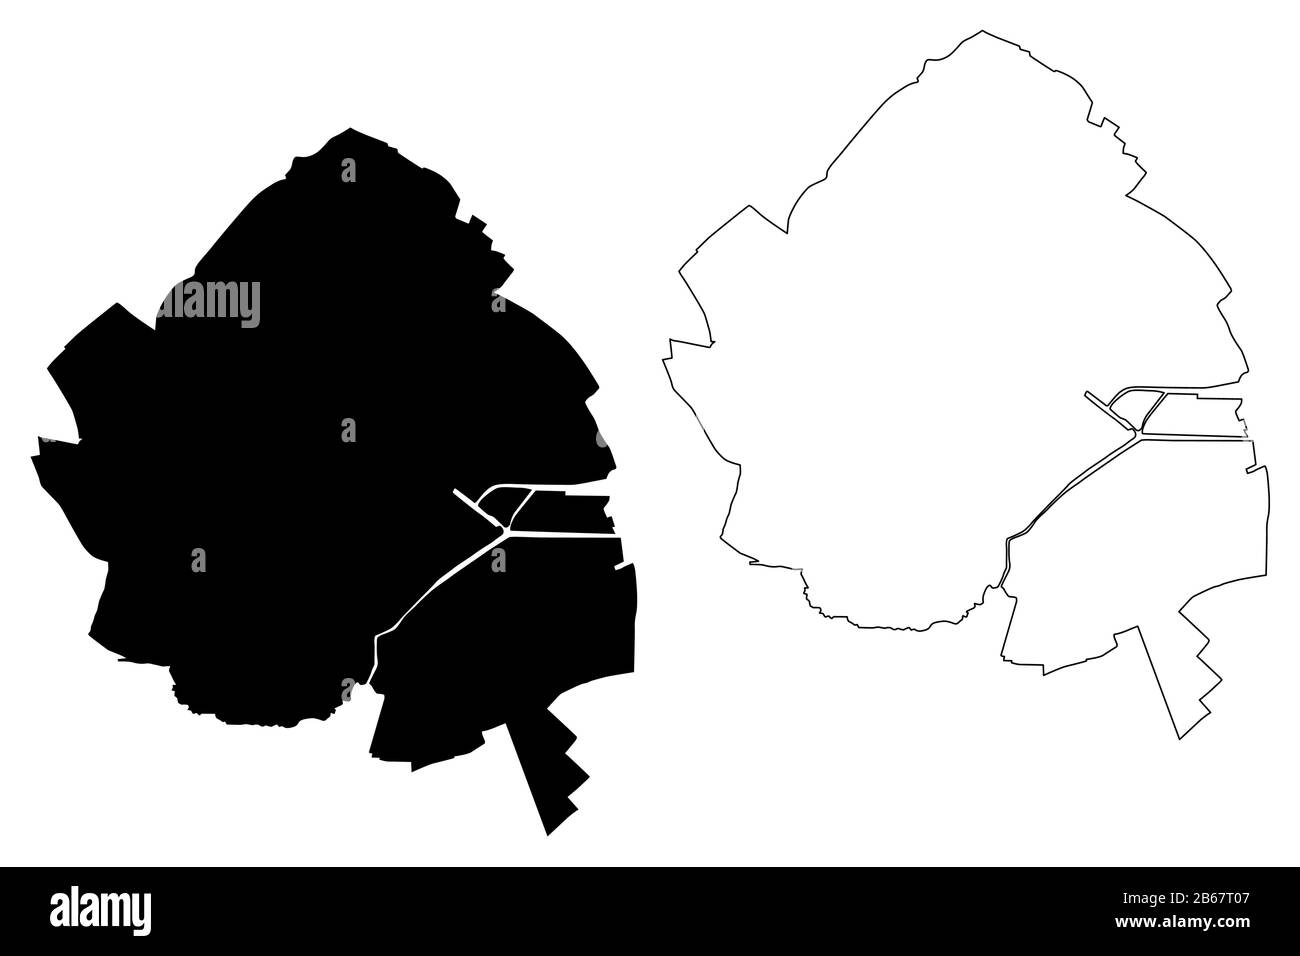 Ville de Caen (République française, France) illustration vectorielle de carte, esquisse de griffonnage carte de la ville de Caen Illustration de Vecteur